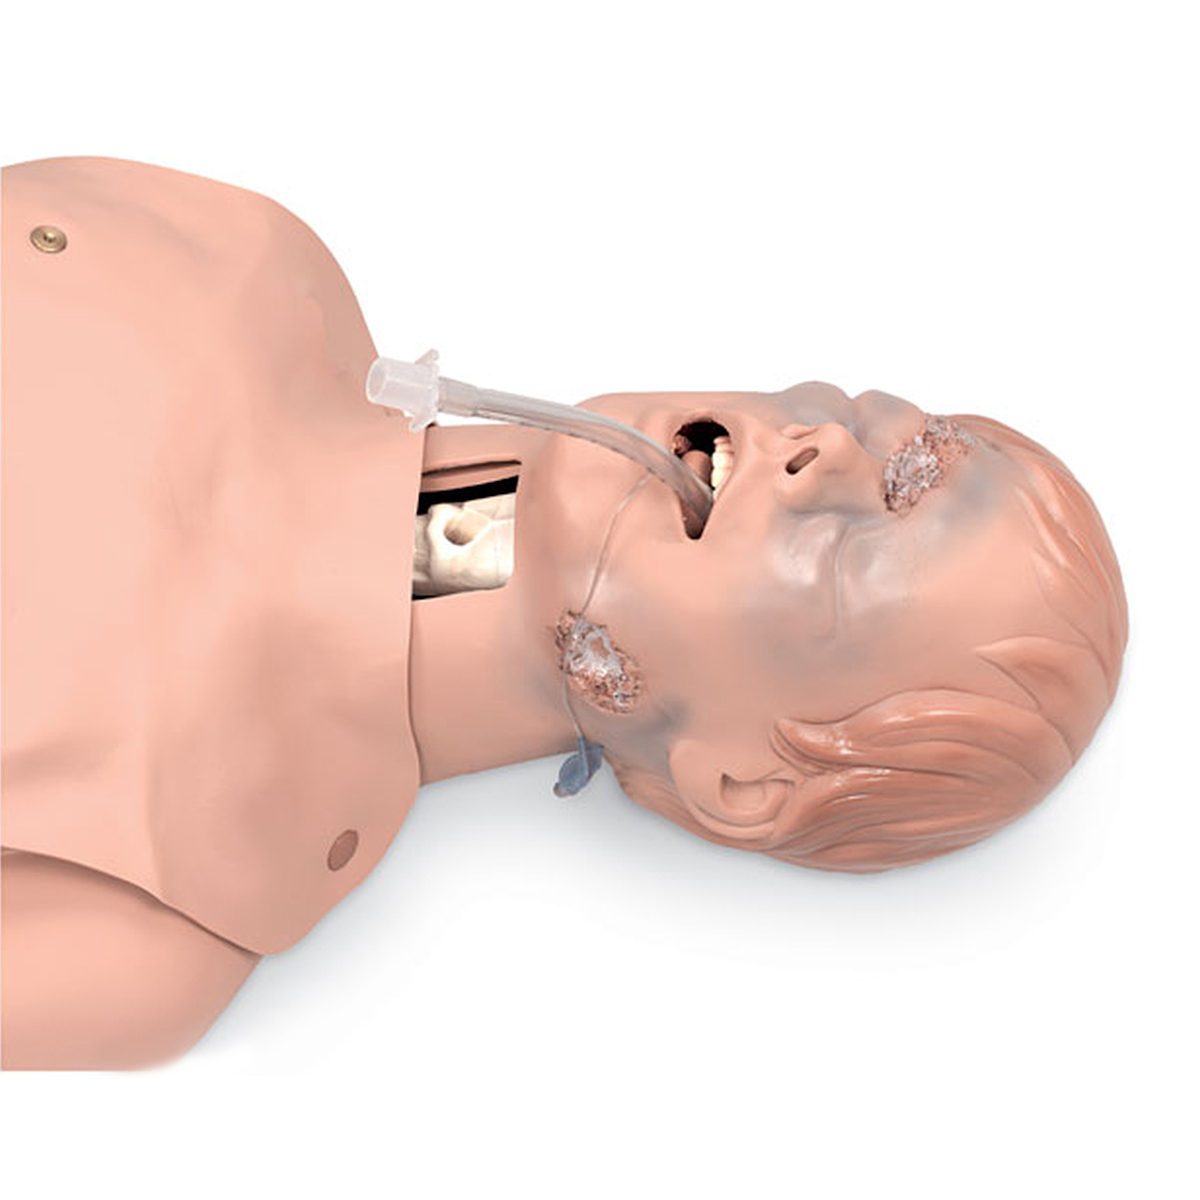 Тренажер для действий на дыхательных путях в
критических состояниях